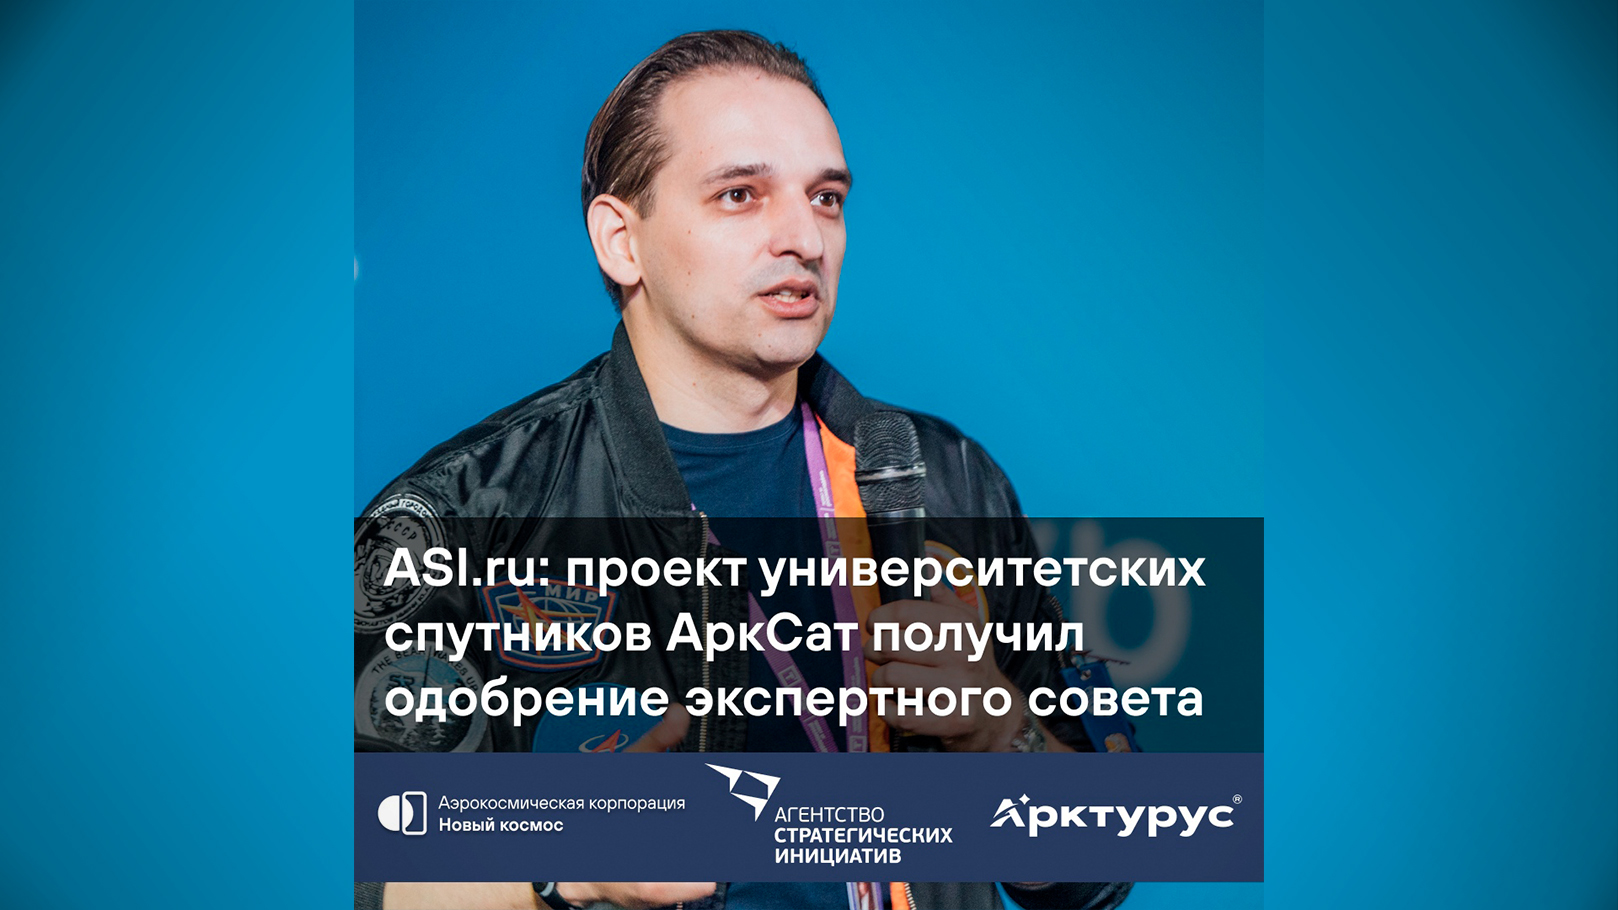 ASI.ru: проект университетских спутников АркСат получил одобрение экспертного совета